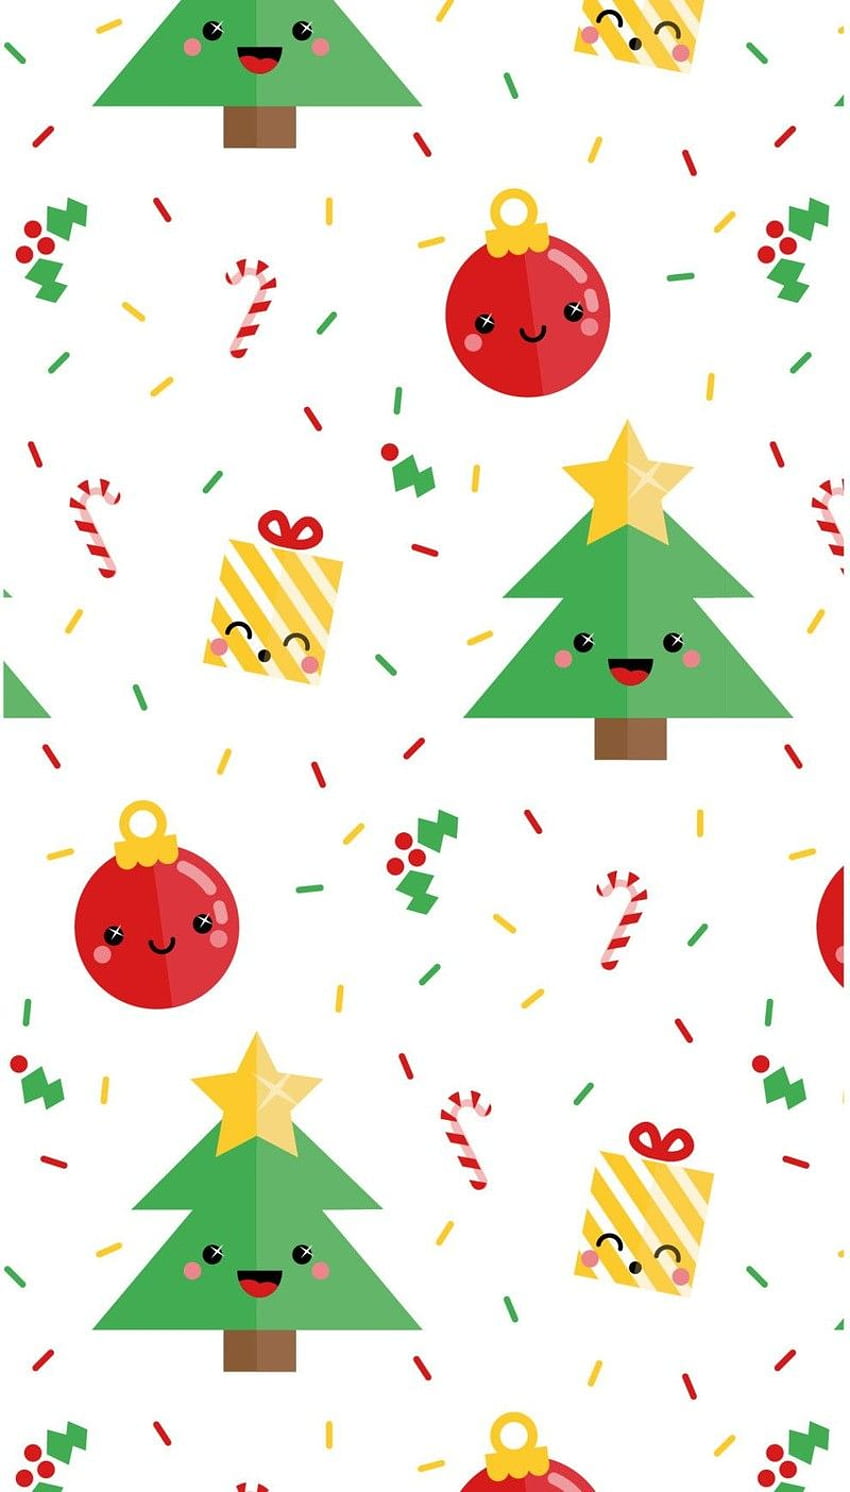 Giáng sinh đang đến rất gần rồi! Hãy chuẩn bị cho mùa lễ hội này bằng cách tìm kiếm hình nền đẹp về Giáng sinh tại trang web của chúng tôi. Những bức ảnh toả sáng qua đường hoa cỏ dành cho màn hình của bạn, từ hình nền cây thông cho đến những bức tranh giáng sinh độc đáo để tạo nên một không gian ấm áp.